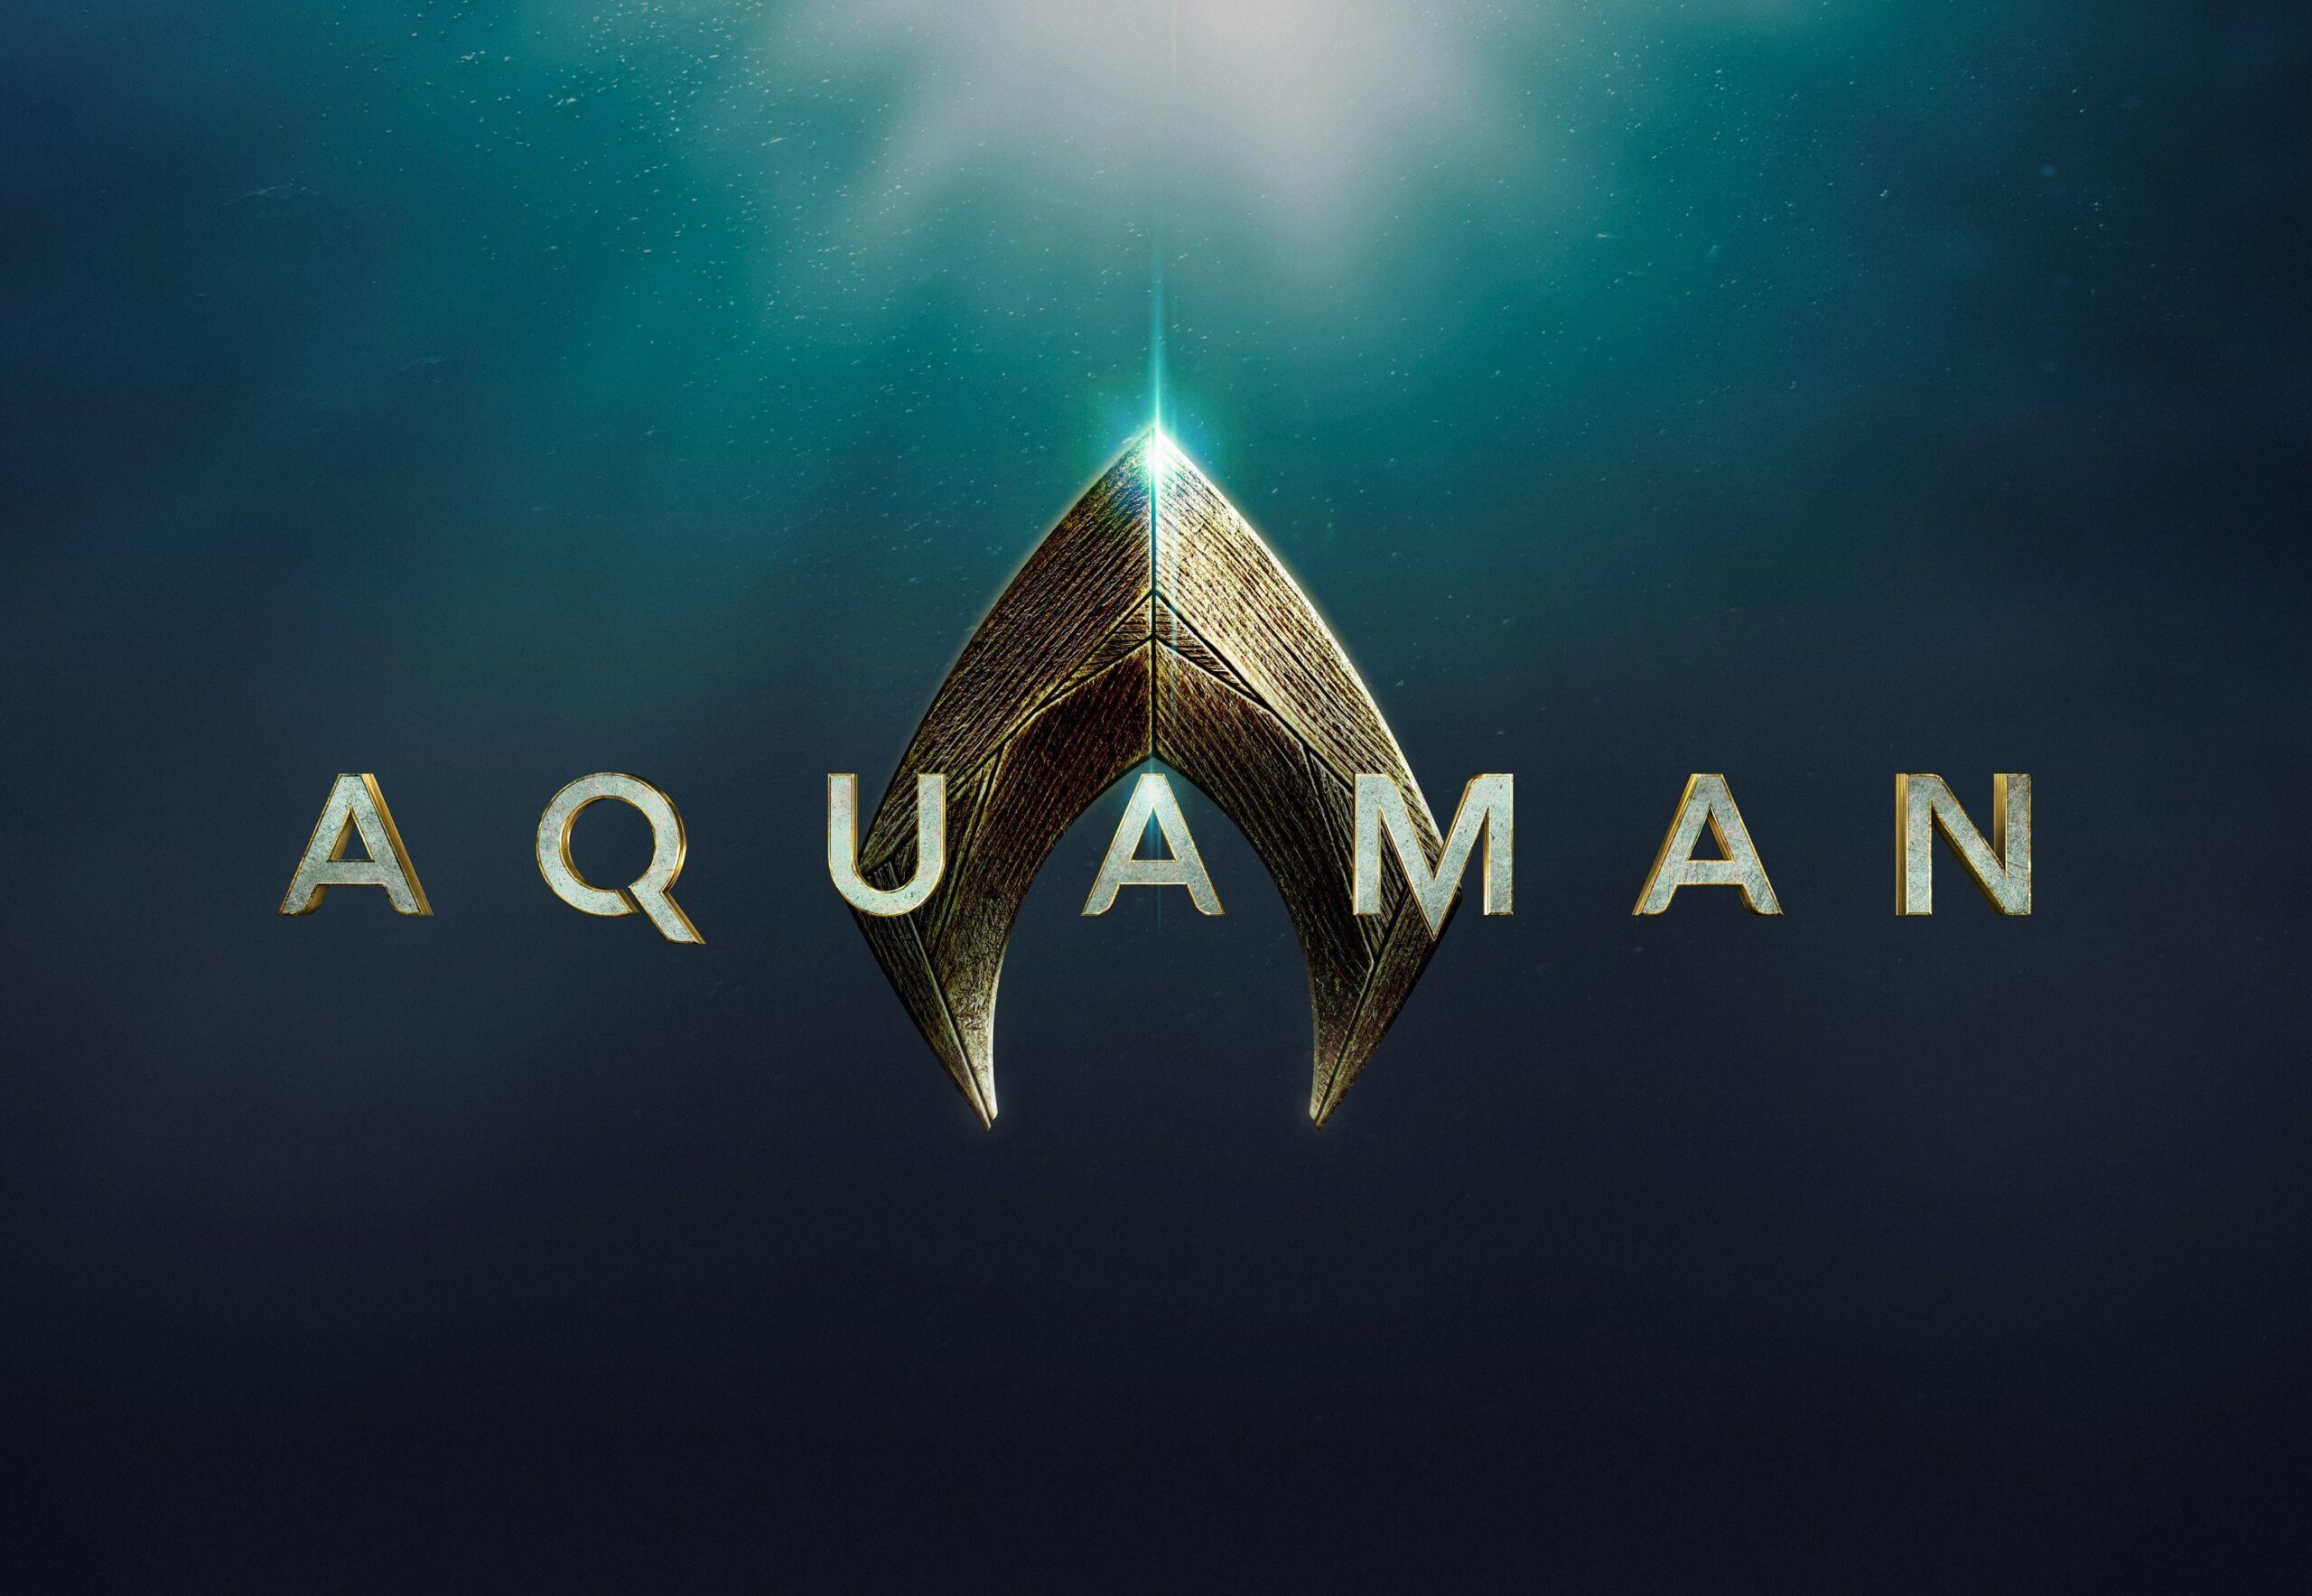 Aquaman 2018 Desktop Wallpaper Hd